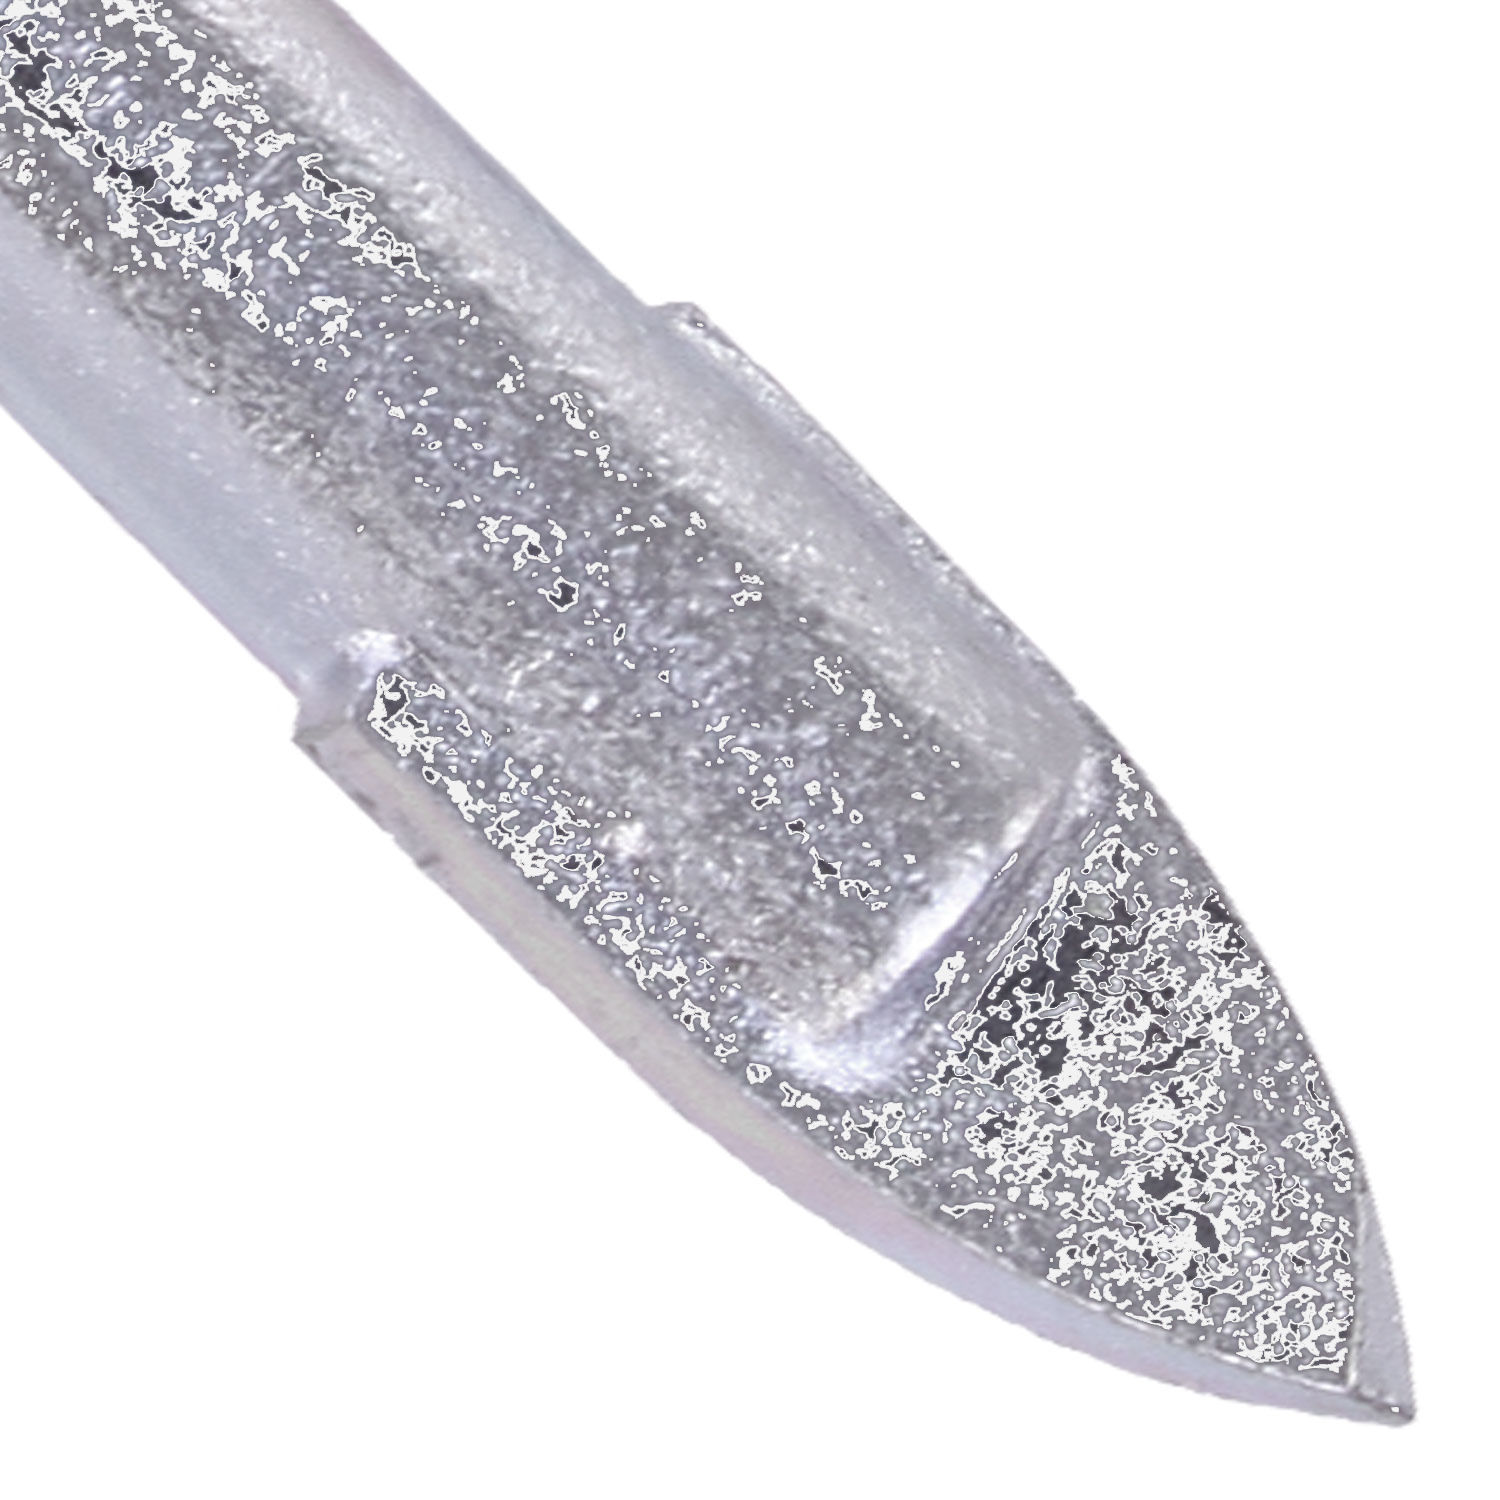 1 KEIL Glasbohrer Ø = 8mm, Länge = 78mm - diamantgeschliffene Hartmetallplatte